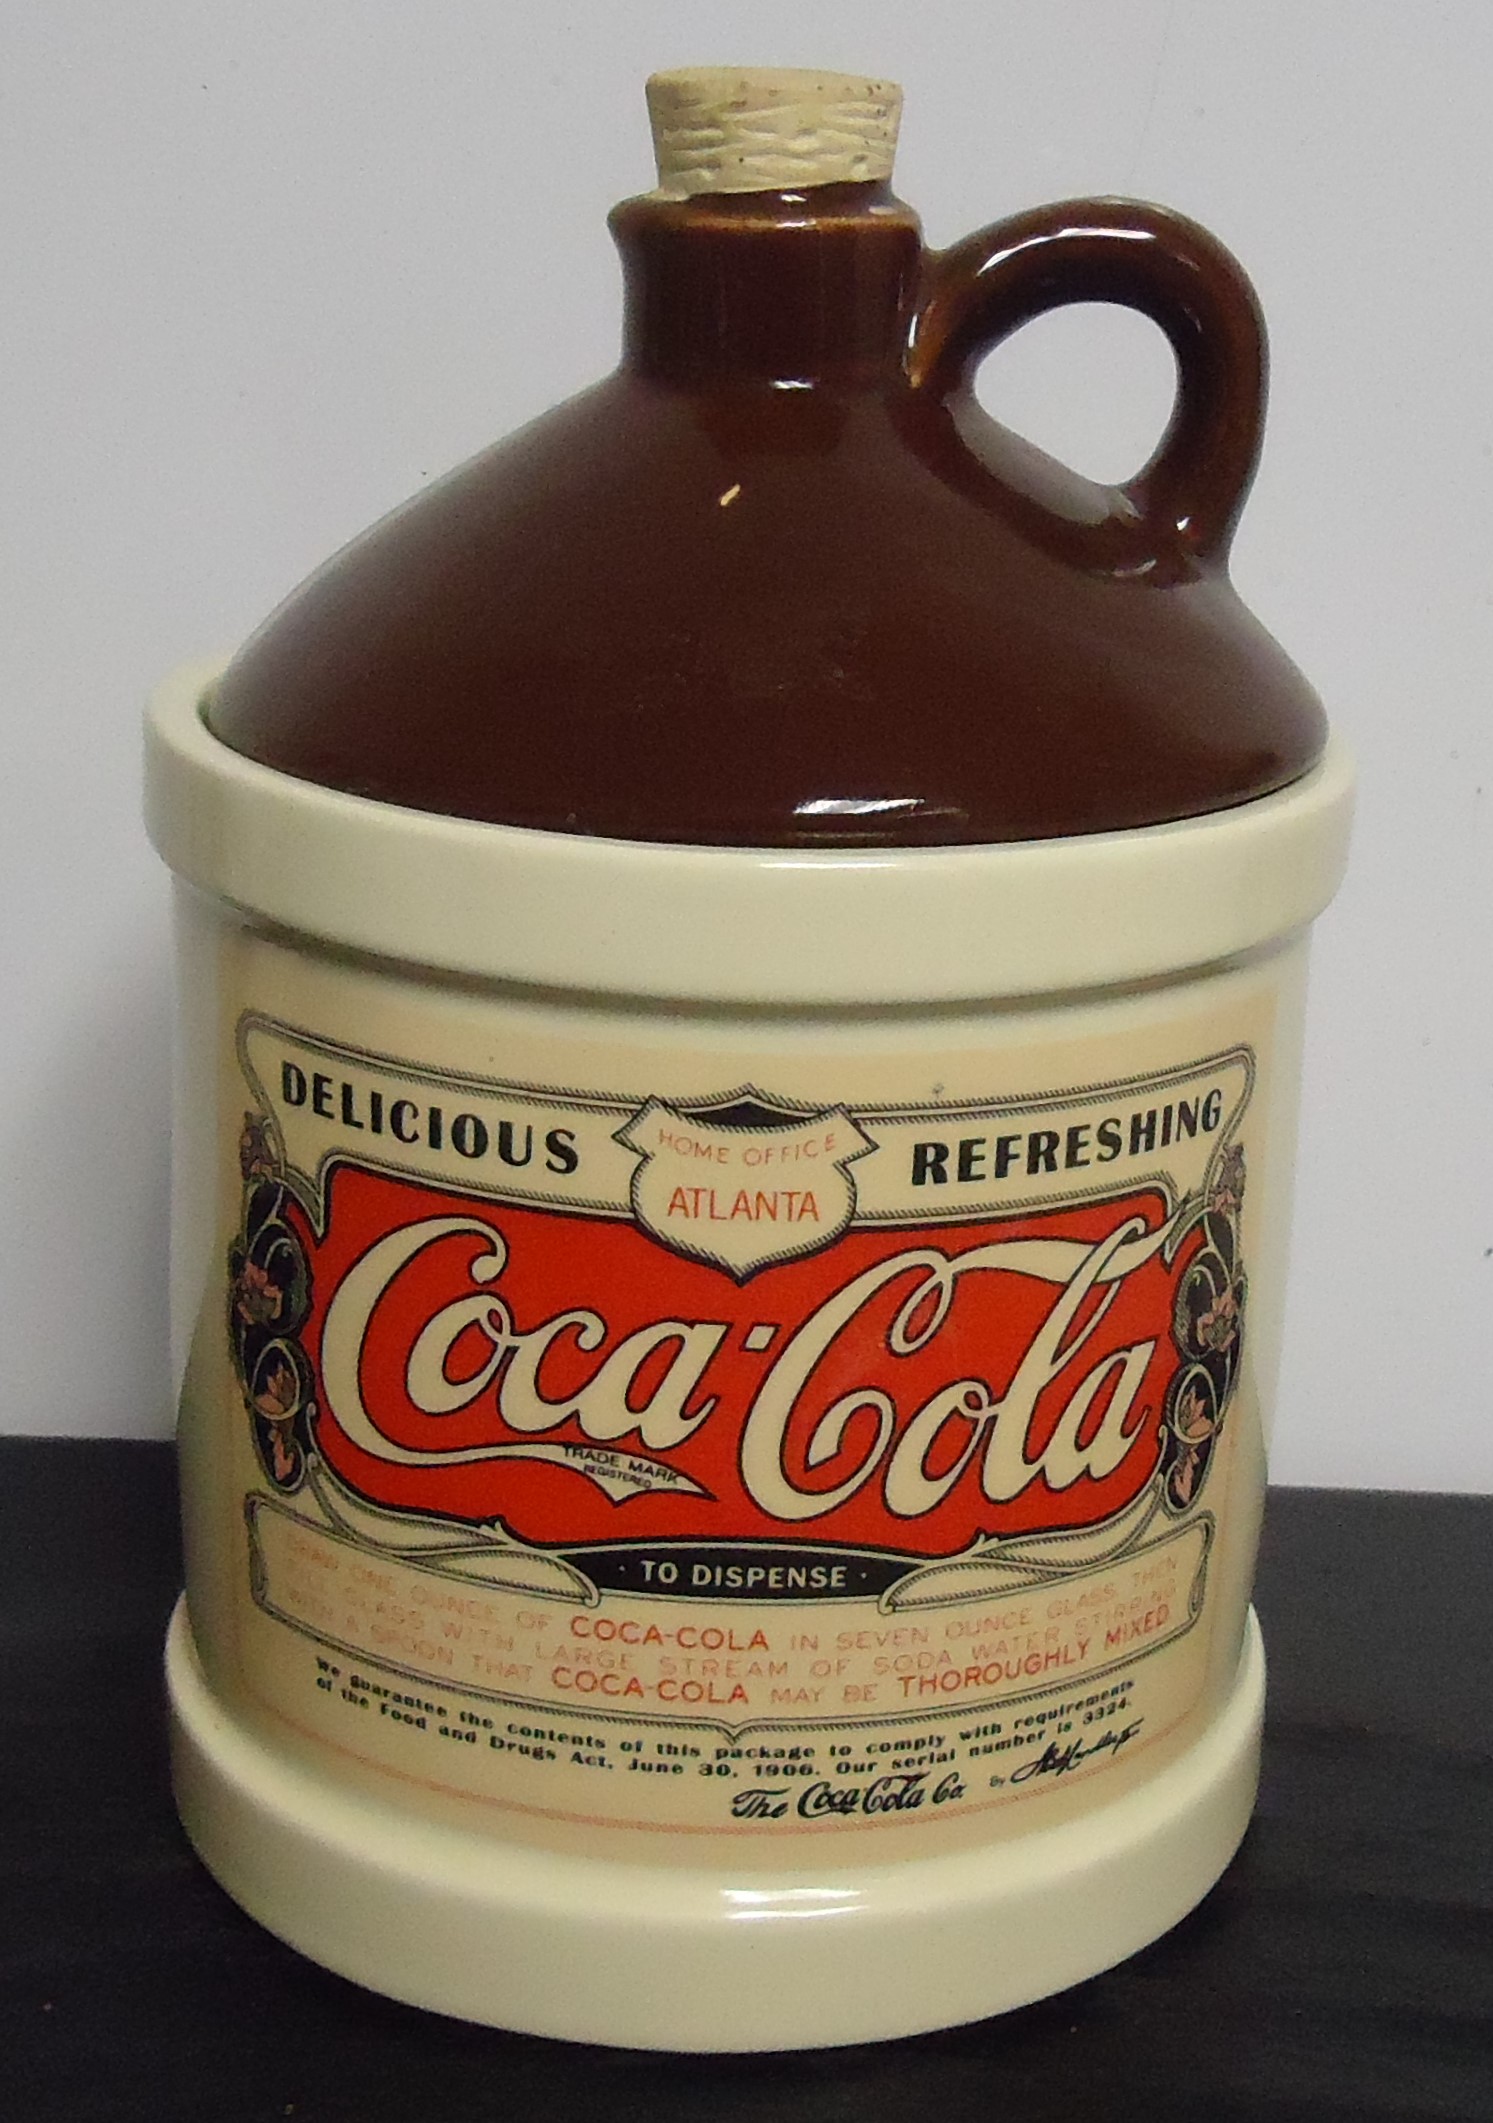 (3B) Coca-Cola Jug
Cookie Jar (McCoy)
$60.00
